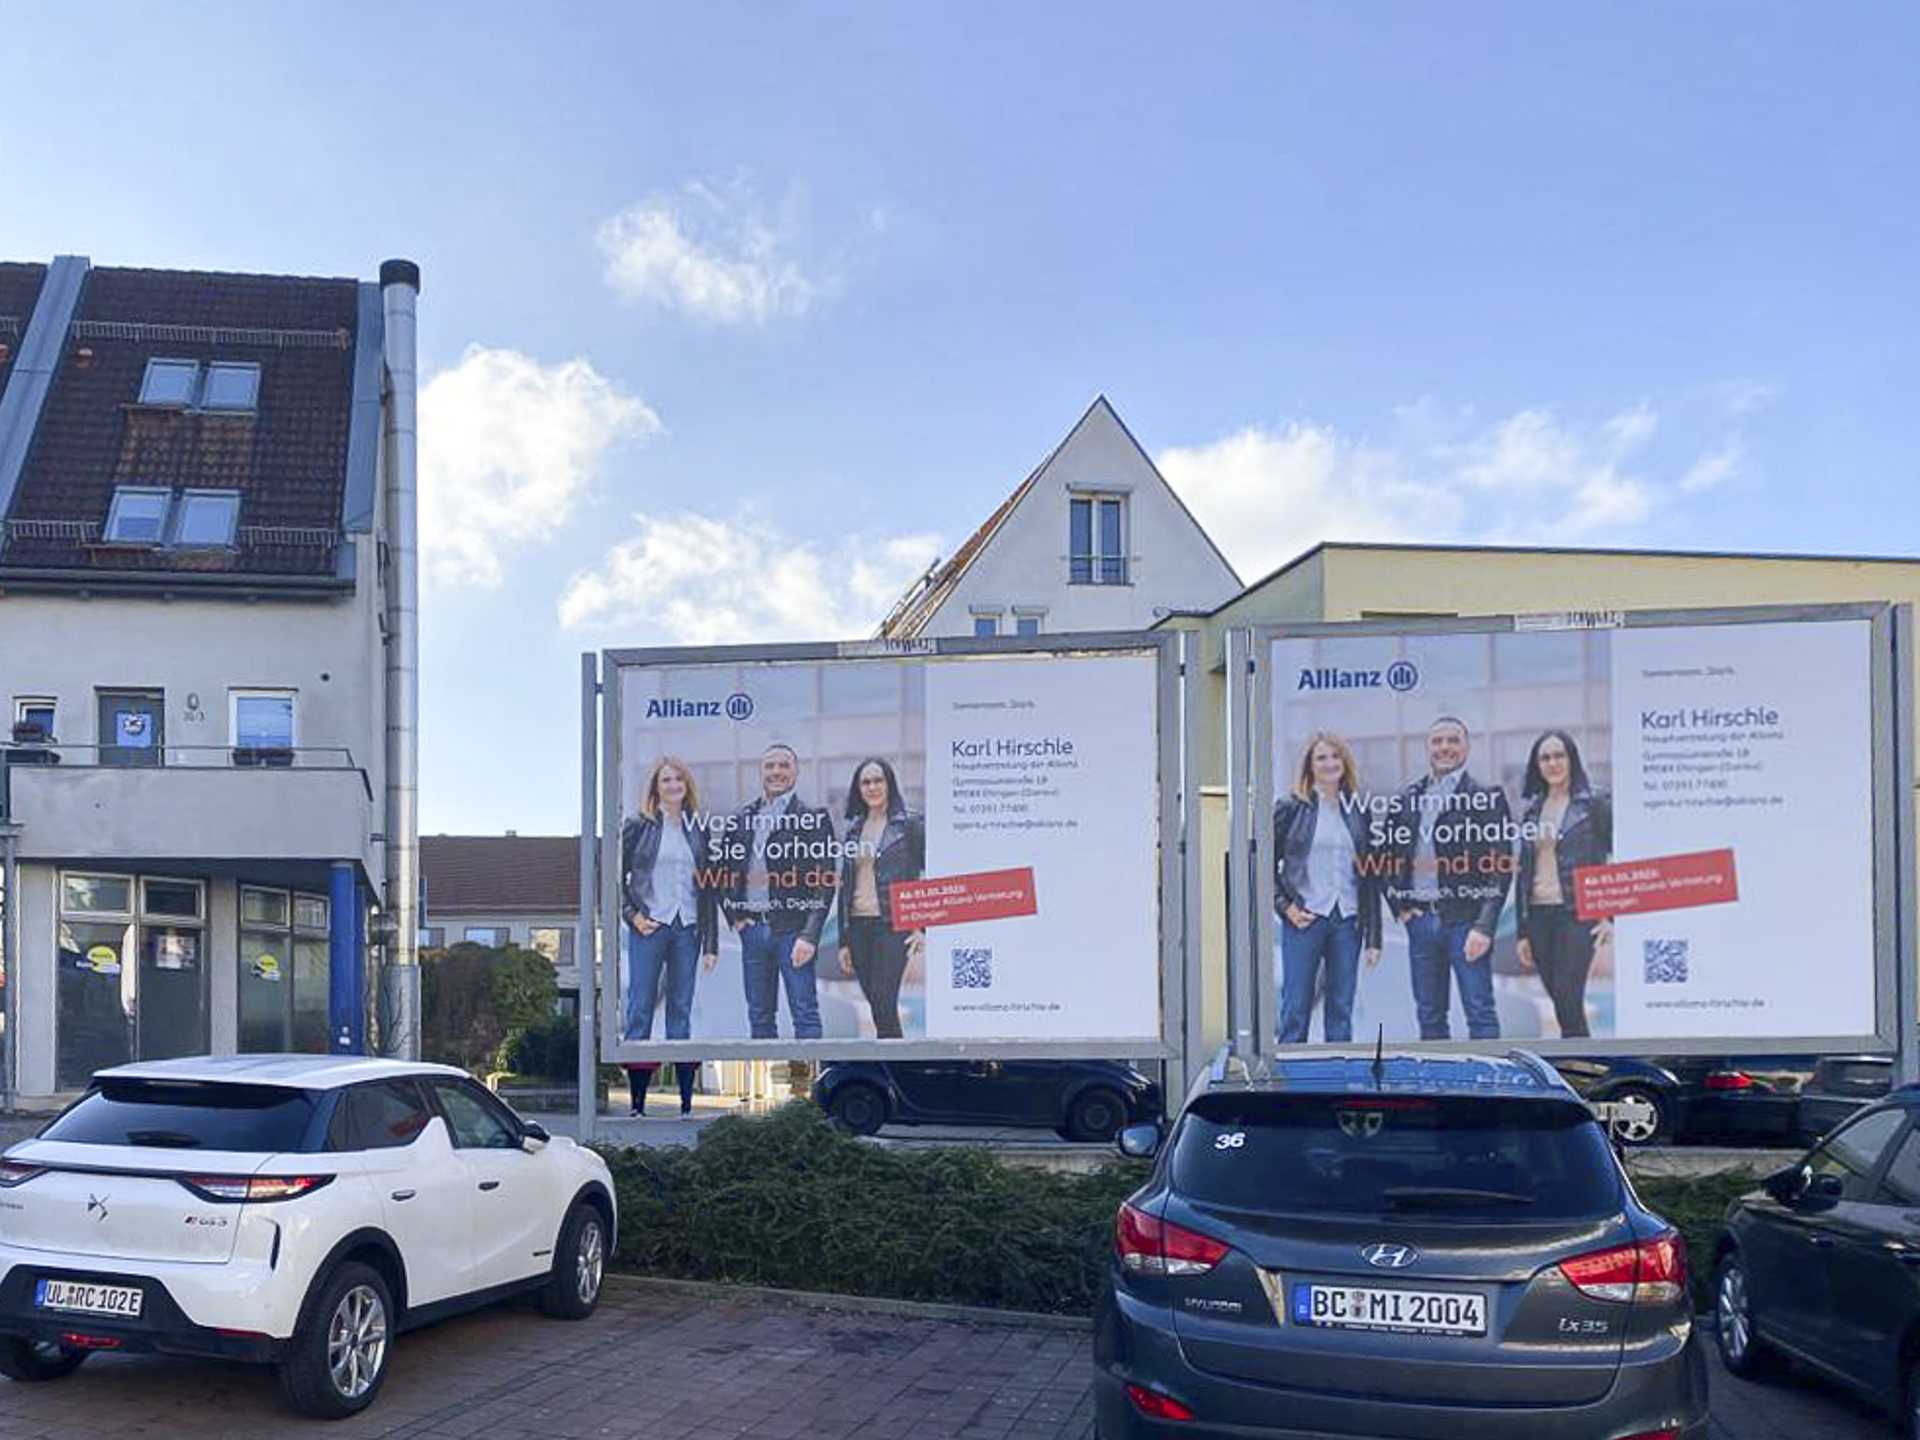 Unser Foto Teamfoto der Allianz Hauptvertretung Hirschle auf Plakat in Ehingen